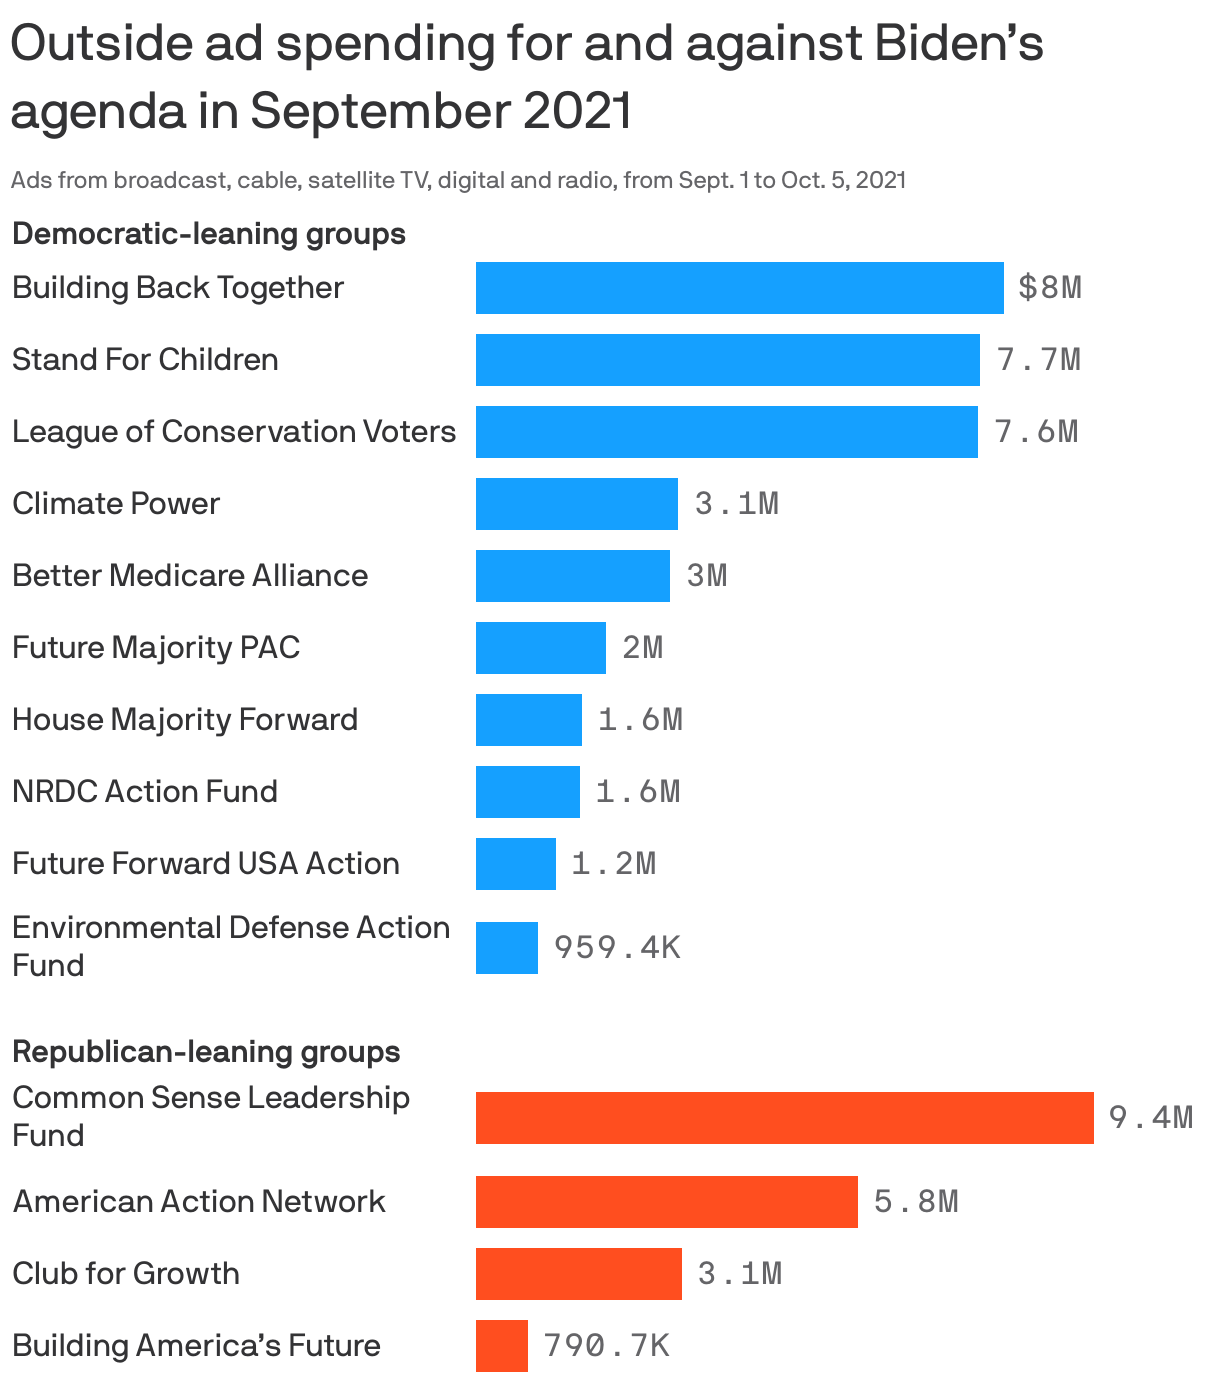 Outside ad spending for and against Biden’s agenda in September 2021